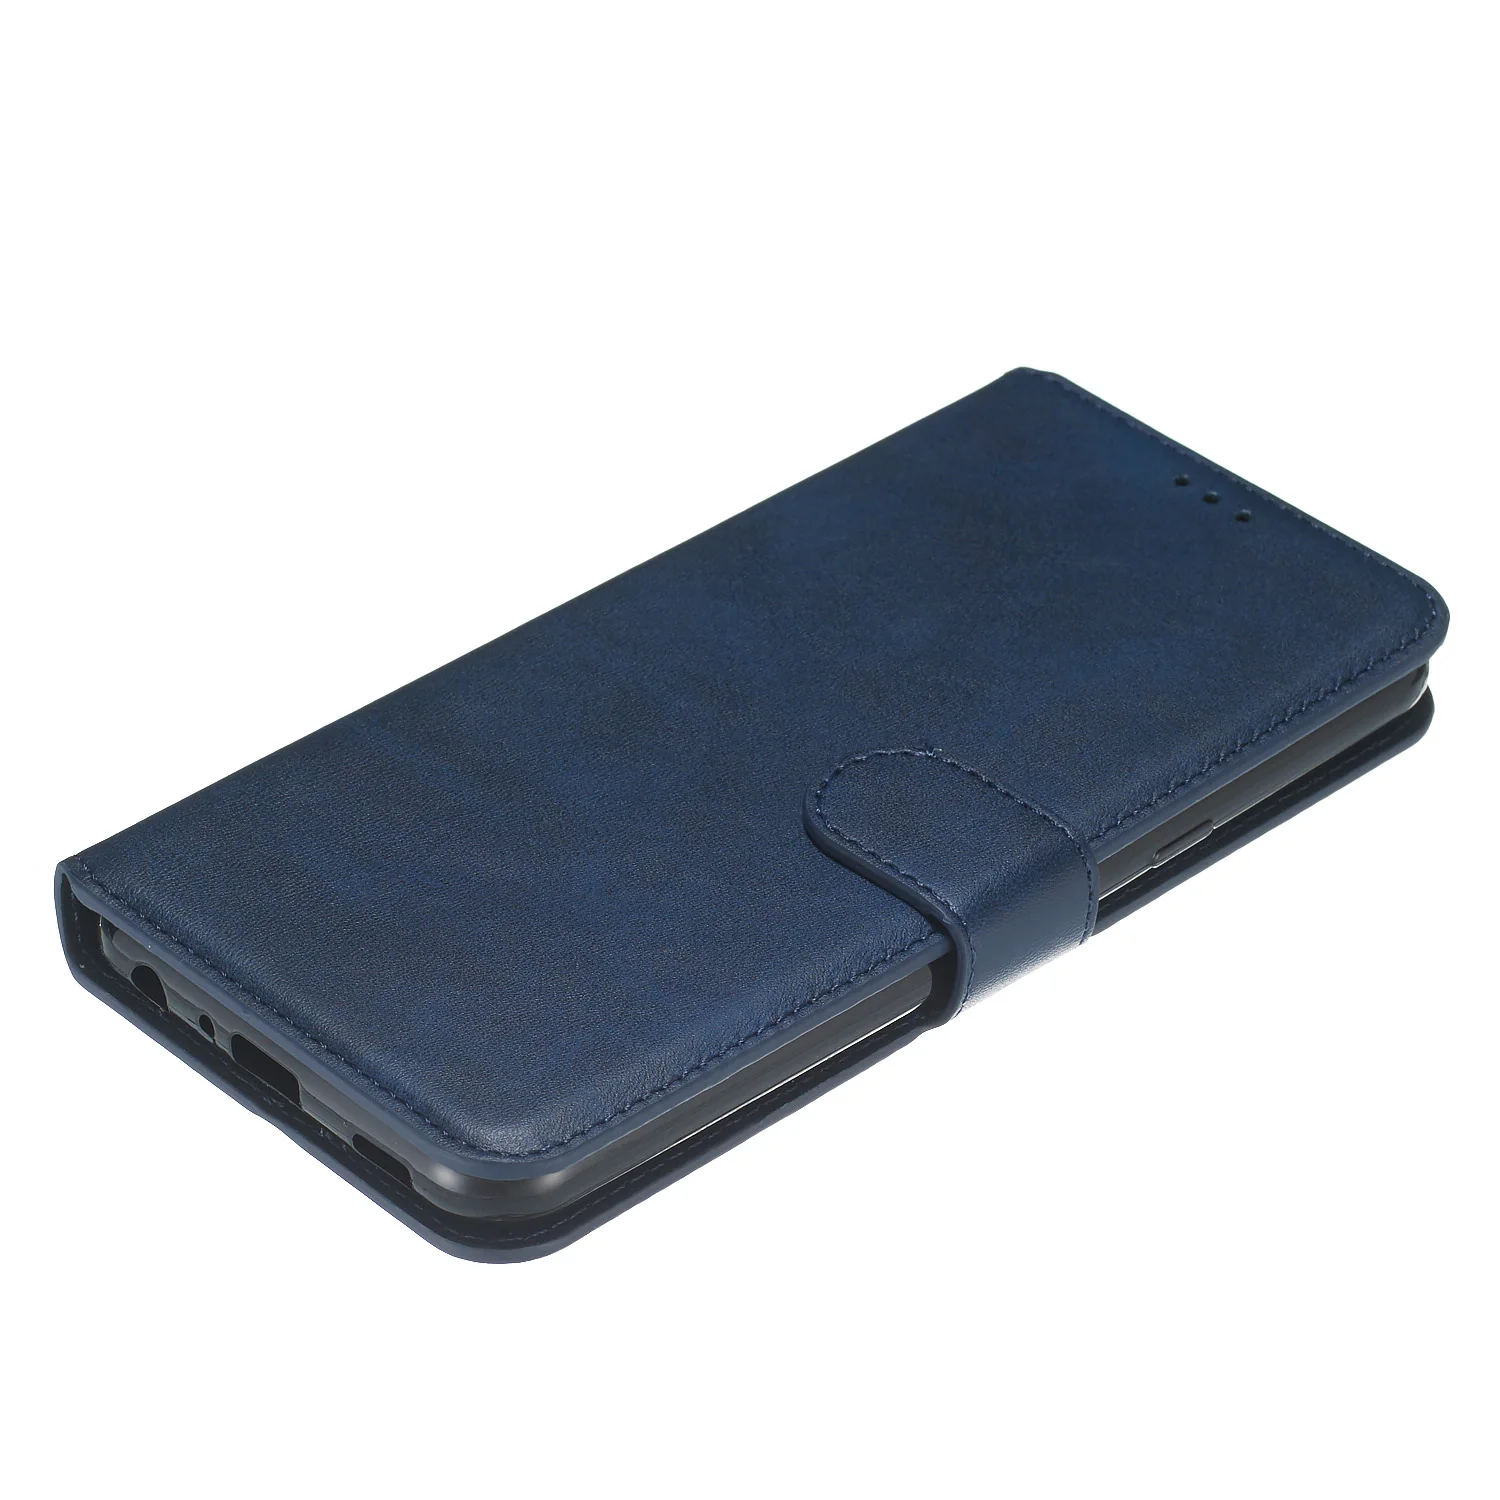 Чехол-книжка из искусственной кожи чехол-бумажник чехол для телефона чехол для LG Q60 K50 k40 K12 плюс X4 V30 V40 V50 stylo 4 5 Q8 G7 ThinQ чехол